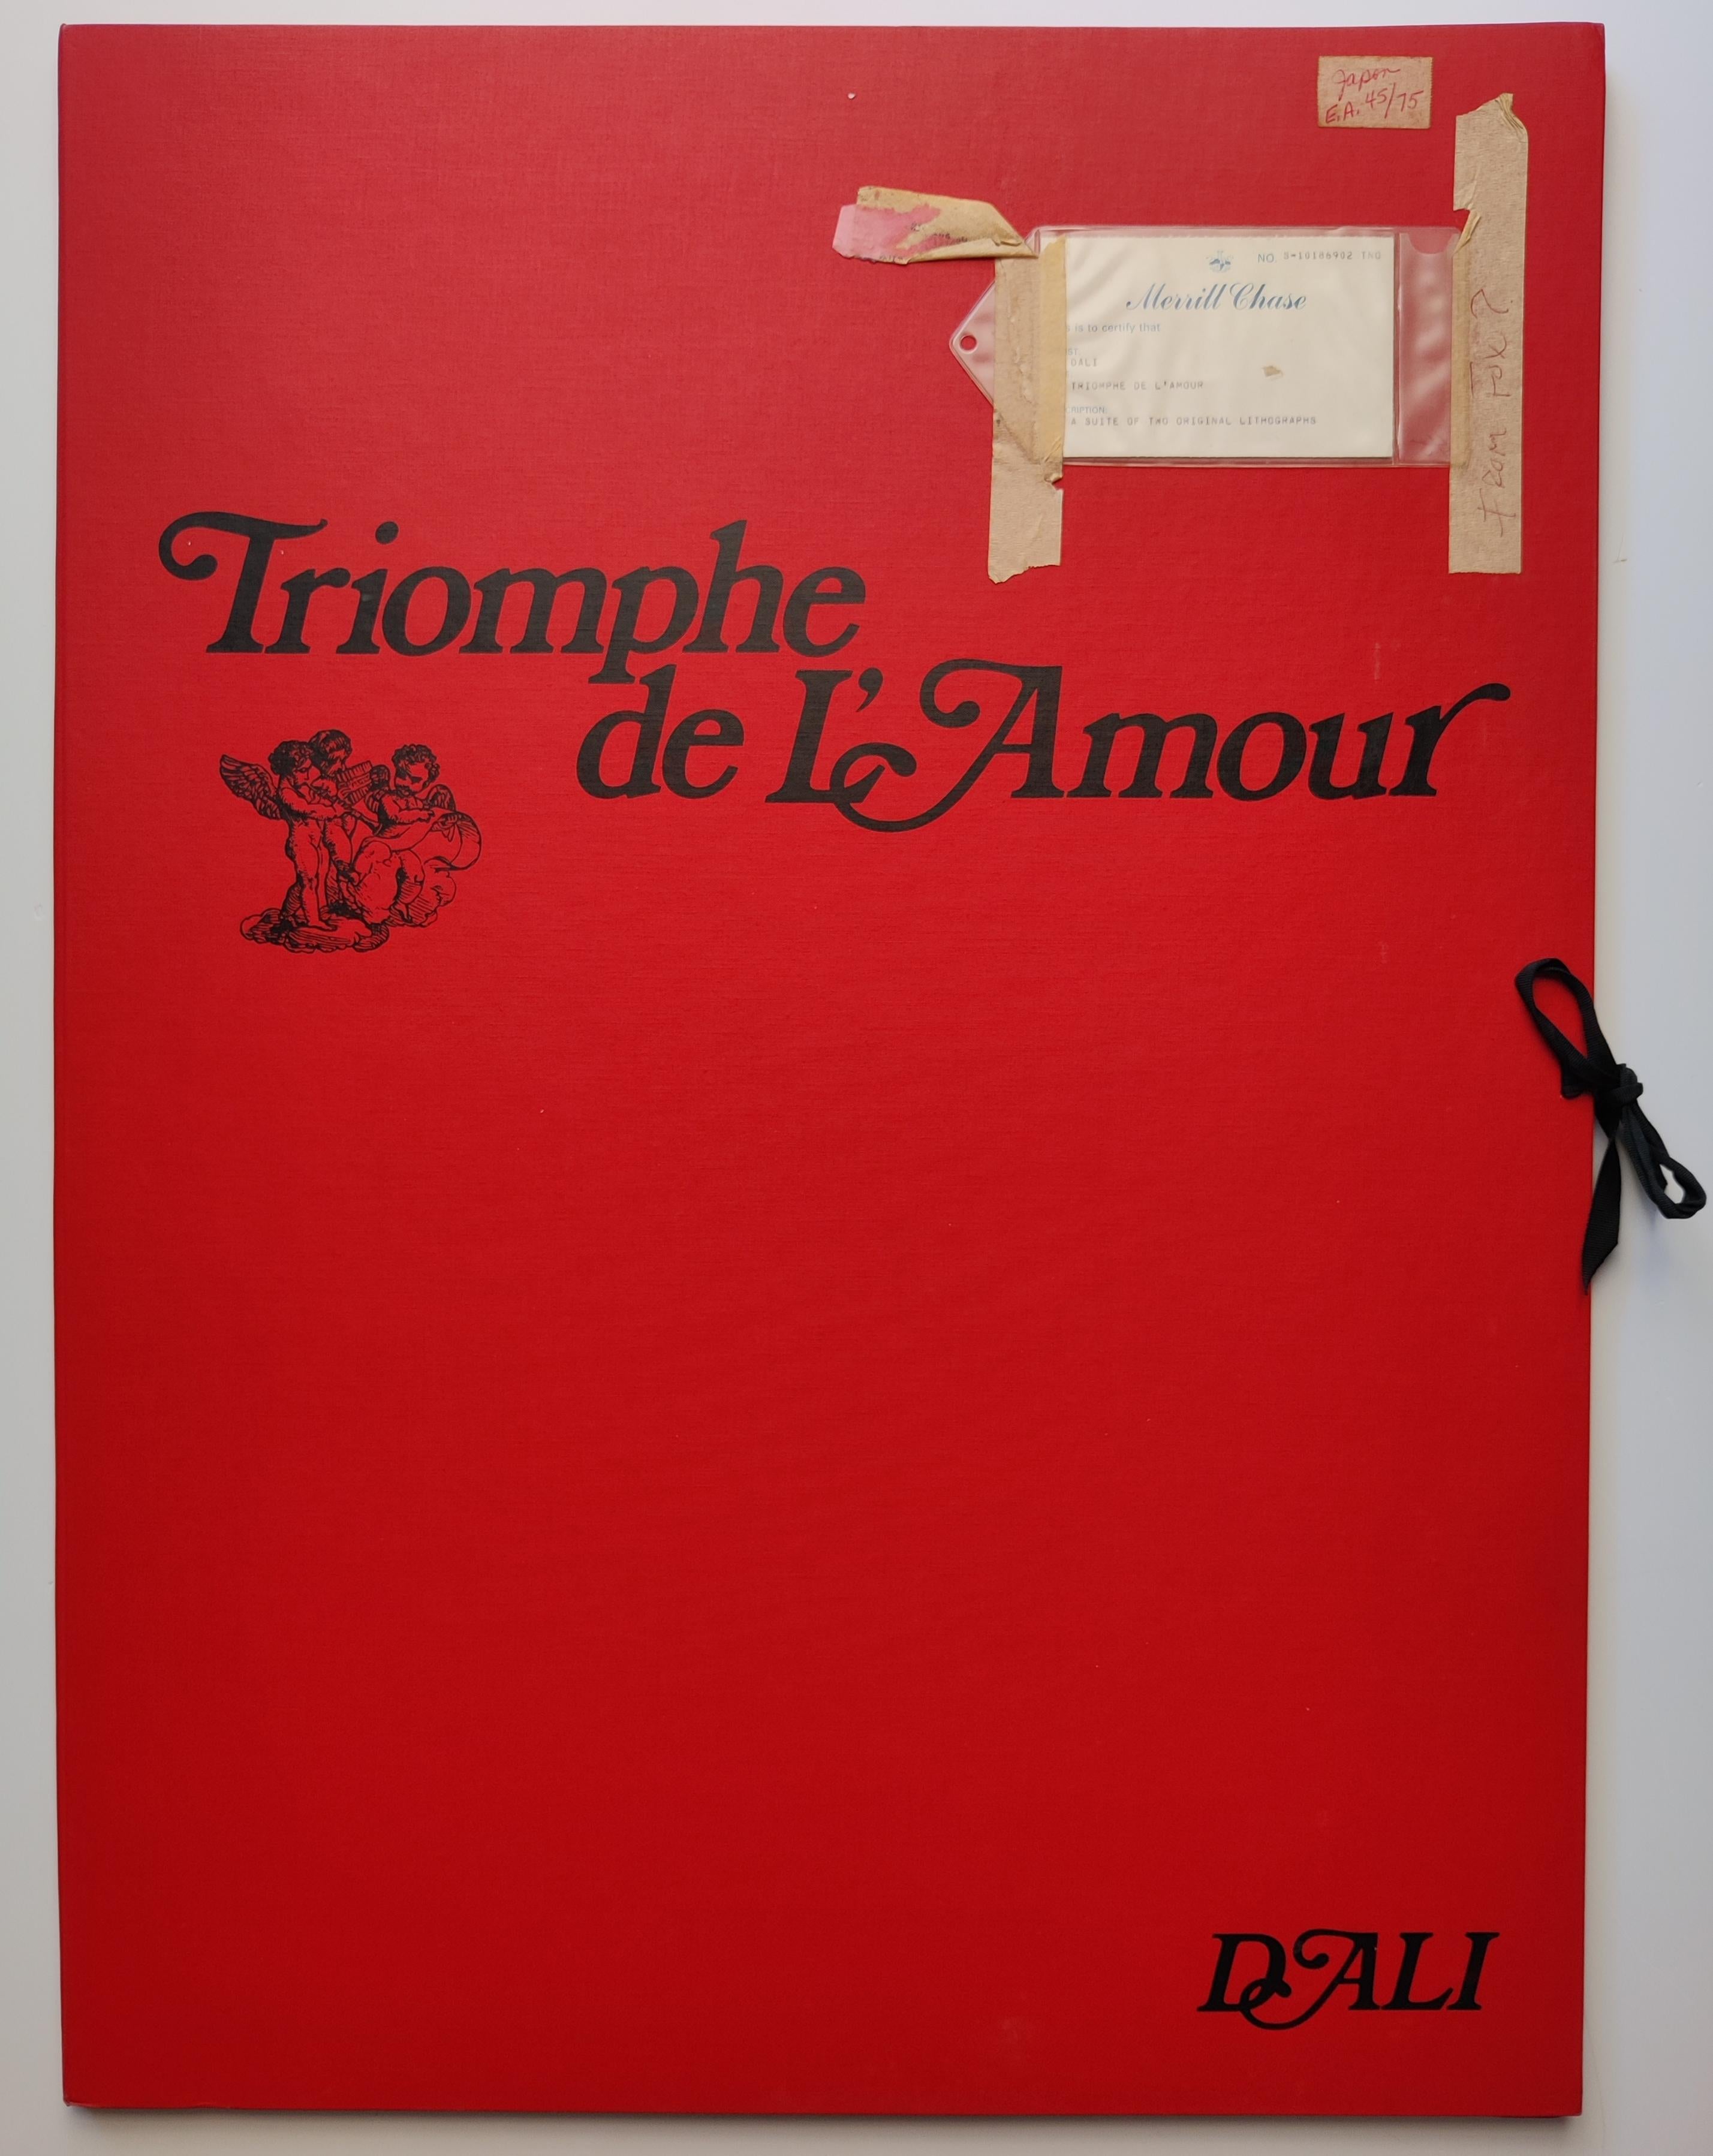 Salvador Dali 
Triomphe de l'Amour  (Triomphe de l'amour), 1977
Suite de 2 lithographies coopératives
Chaque pièce est signée à la main
Edition EA 45 / 75
Elles sont réalisées sur papier Japon et sont accompagnées du portfolio original, y compris